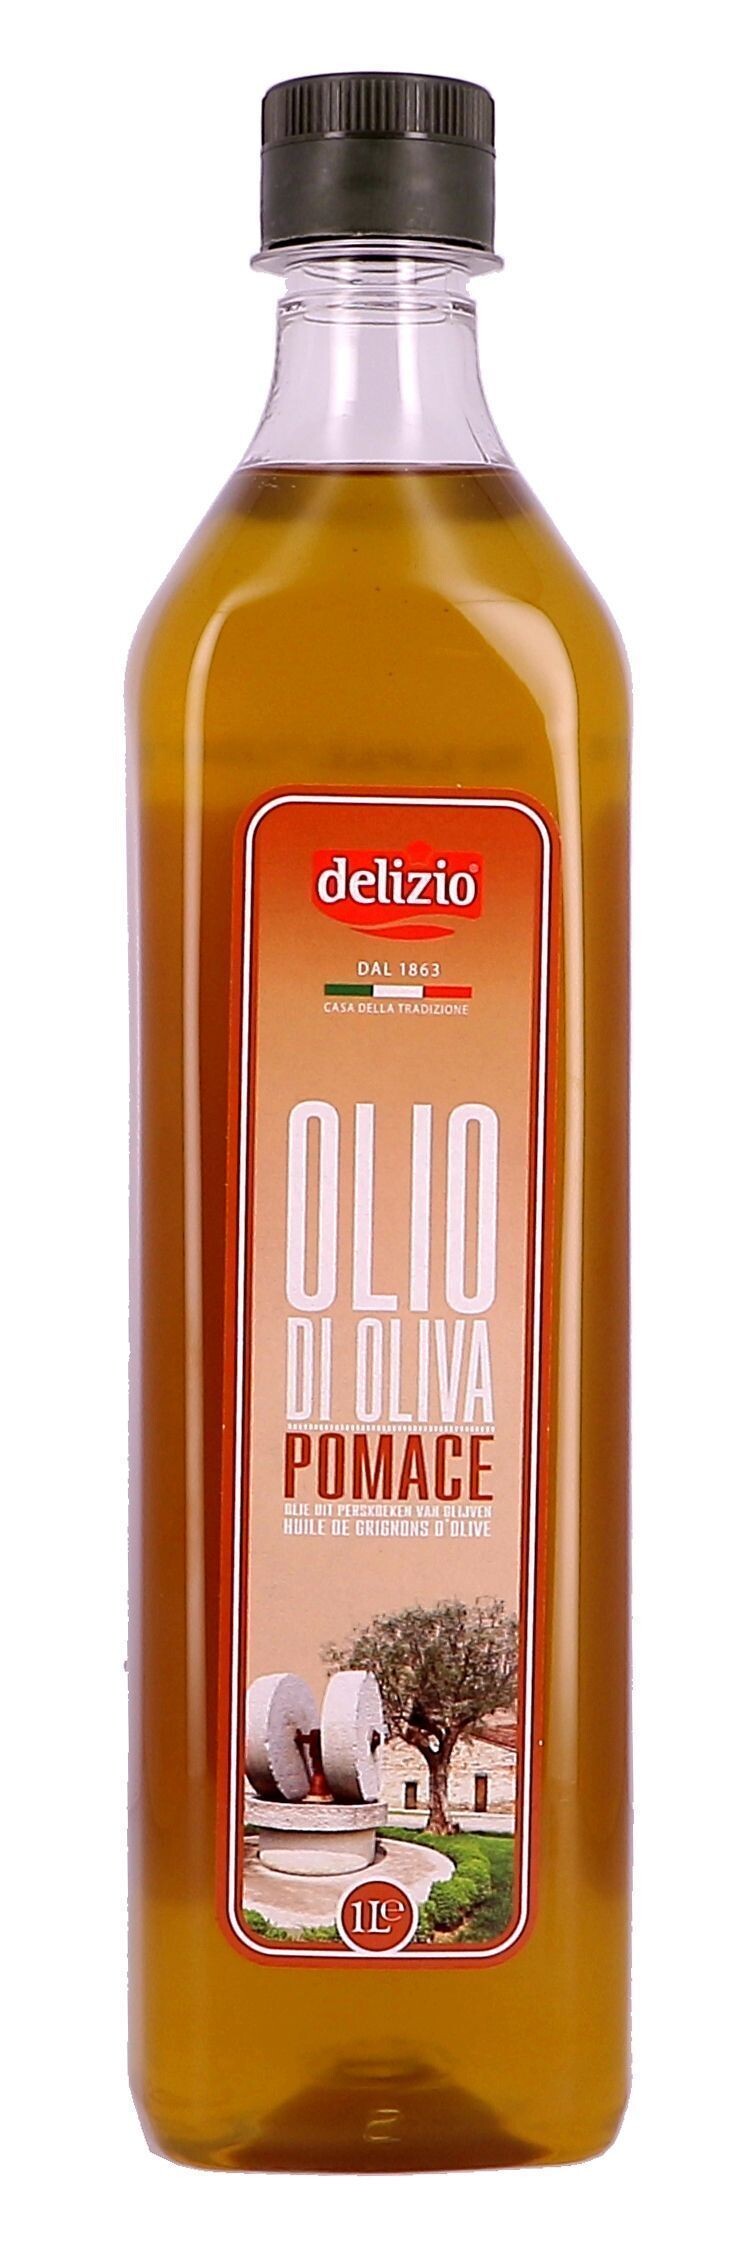 Olive pomace oil 1L Delizio (Olijfolie)